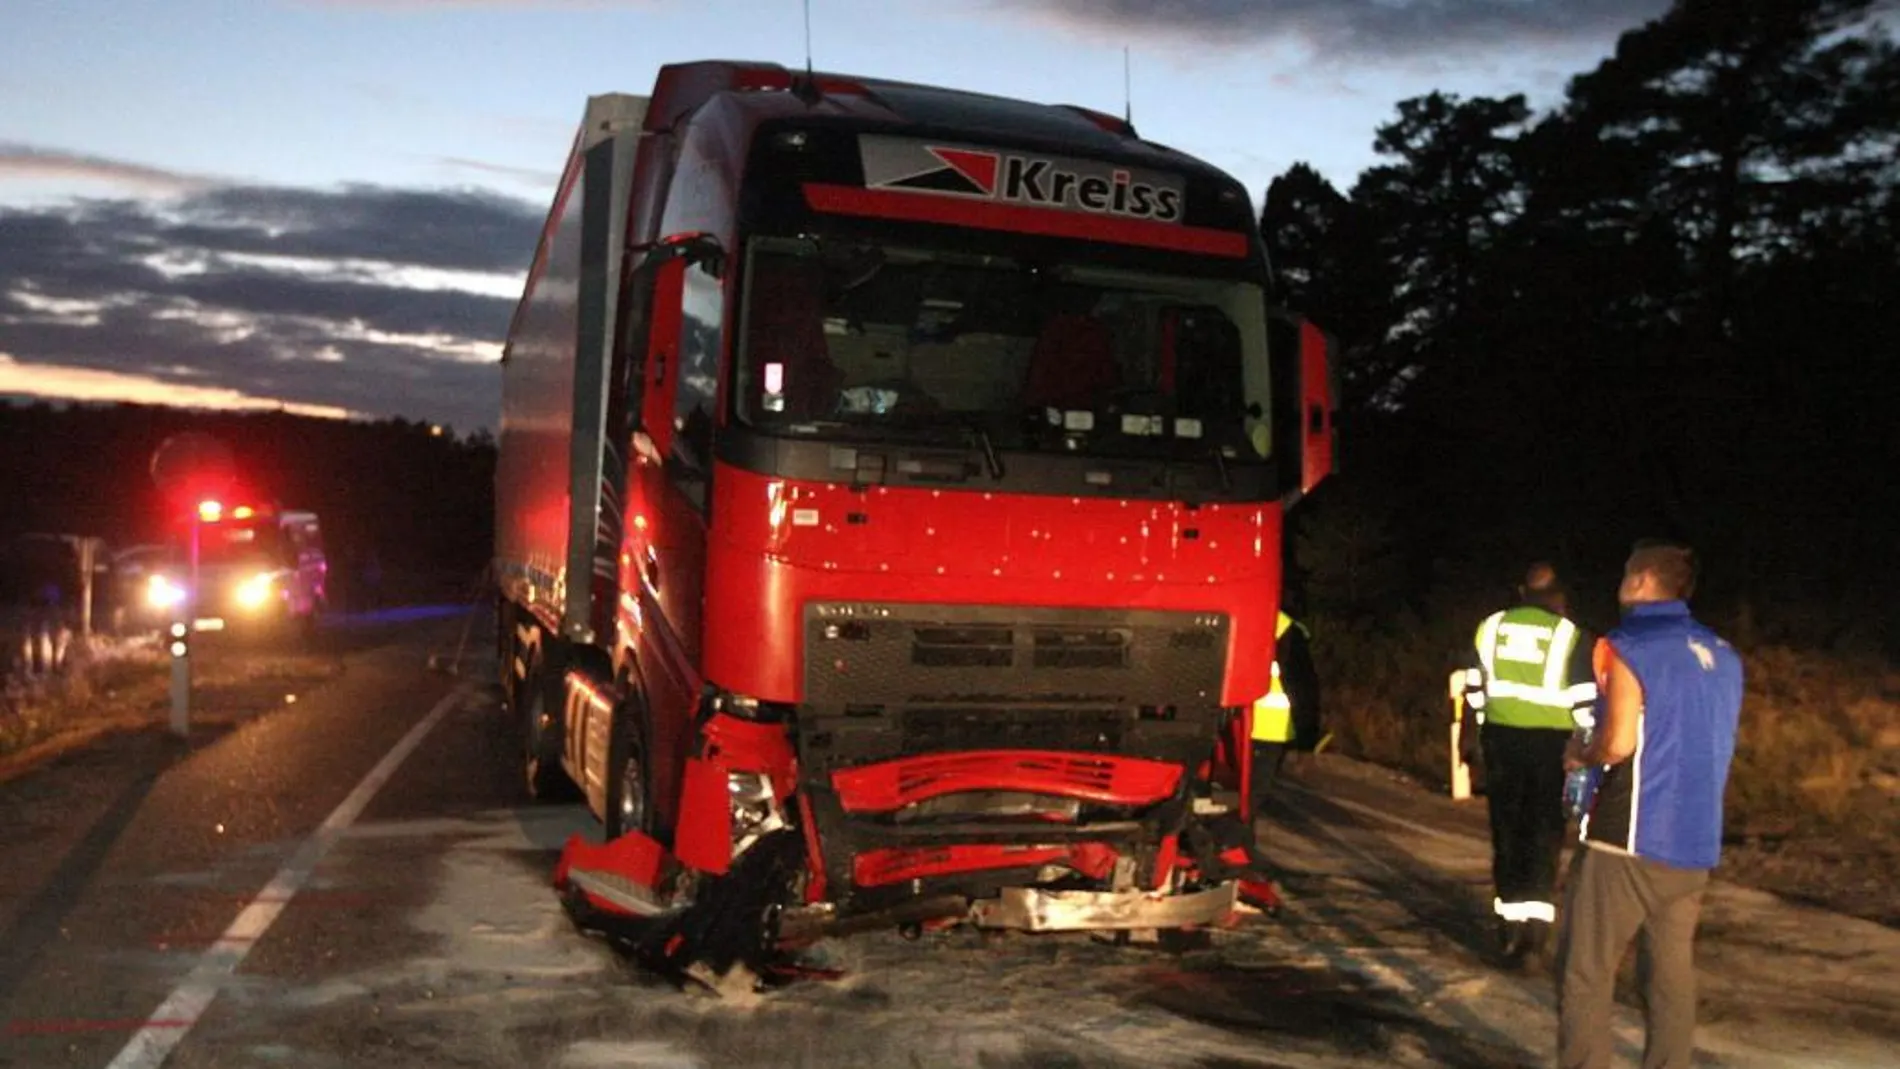 Dos mujeres, que eran hermanas, y un hombre, han fallecido al colisionar frontalmente un turismo y un camión, en la N-234, en Casarejos, en Soria